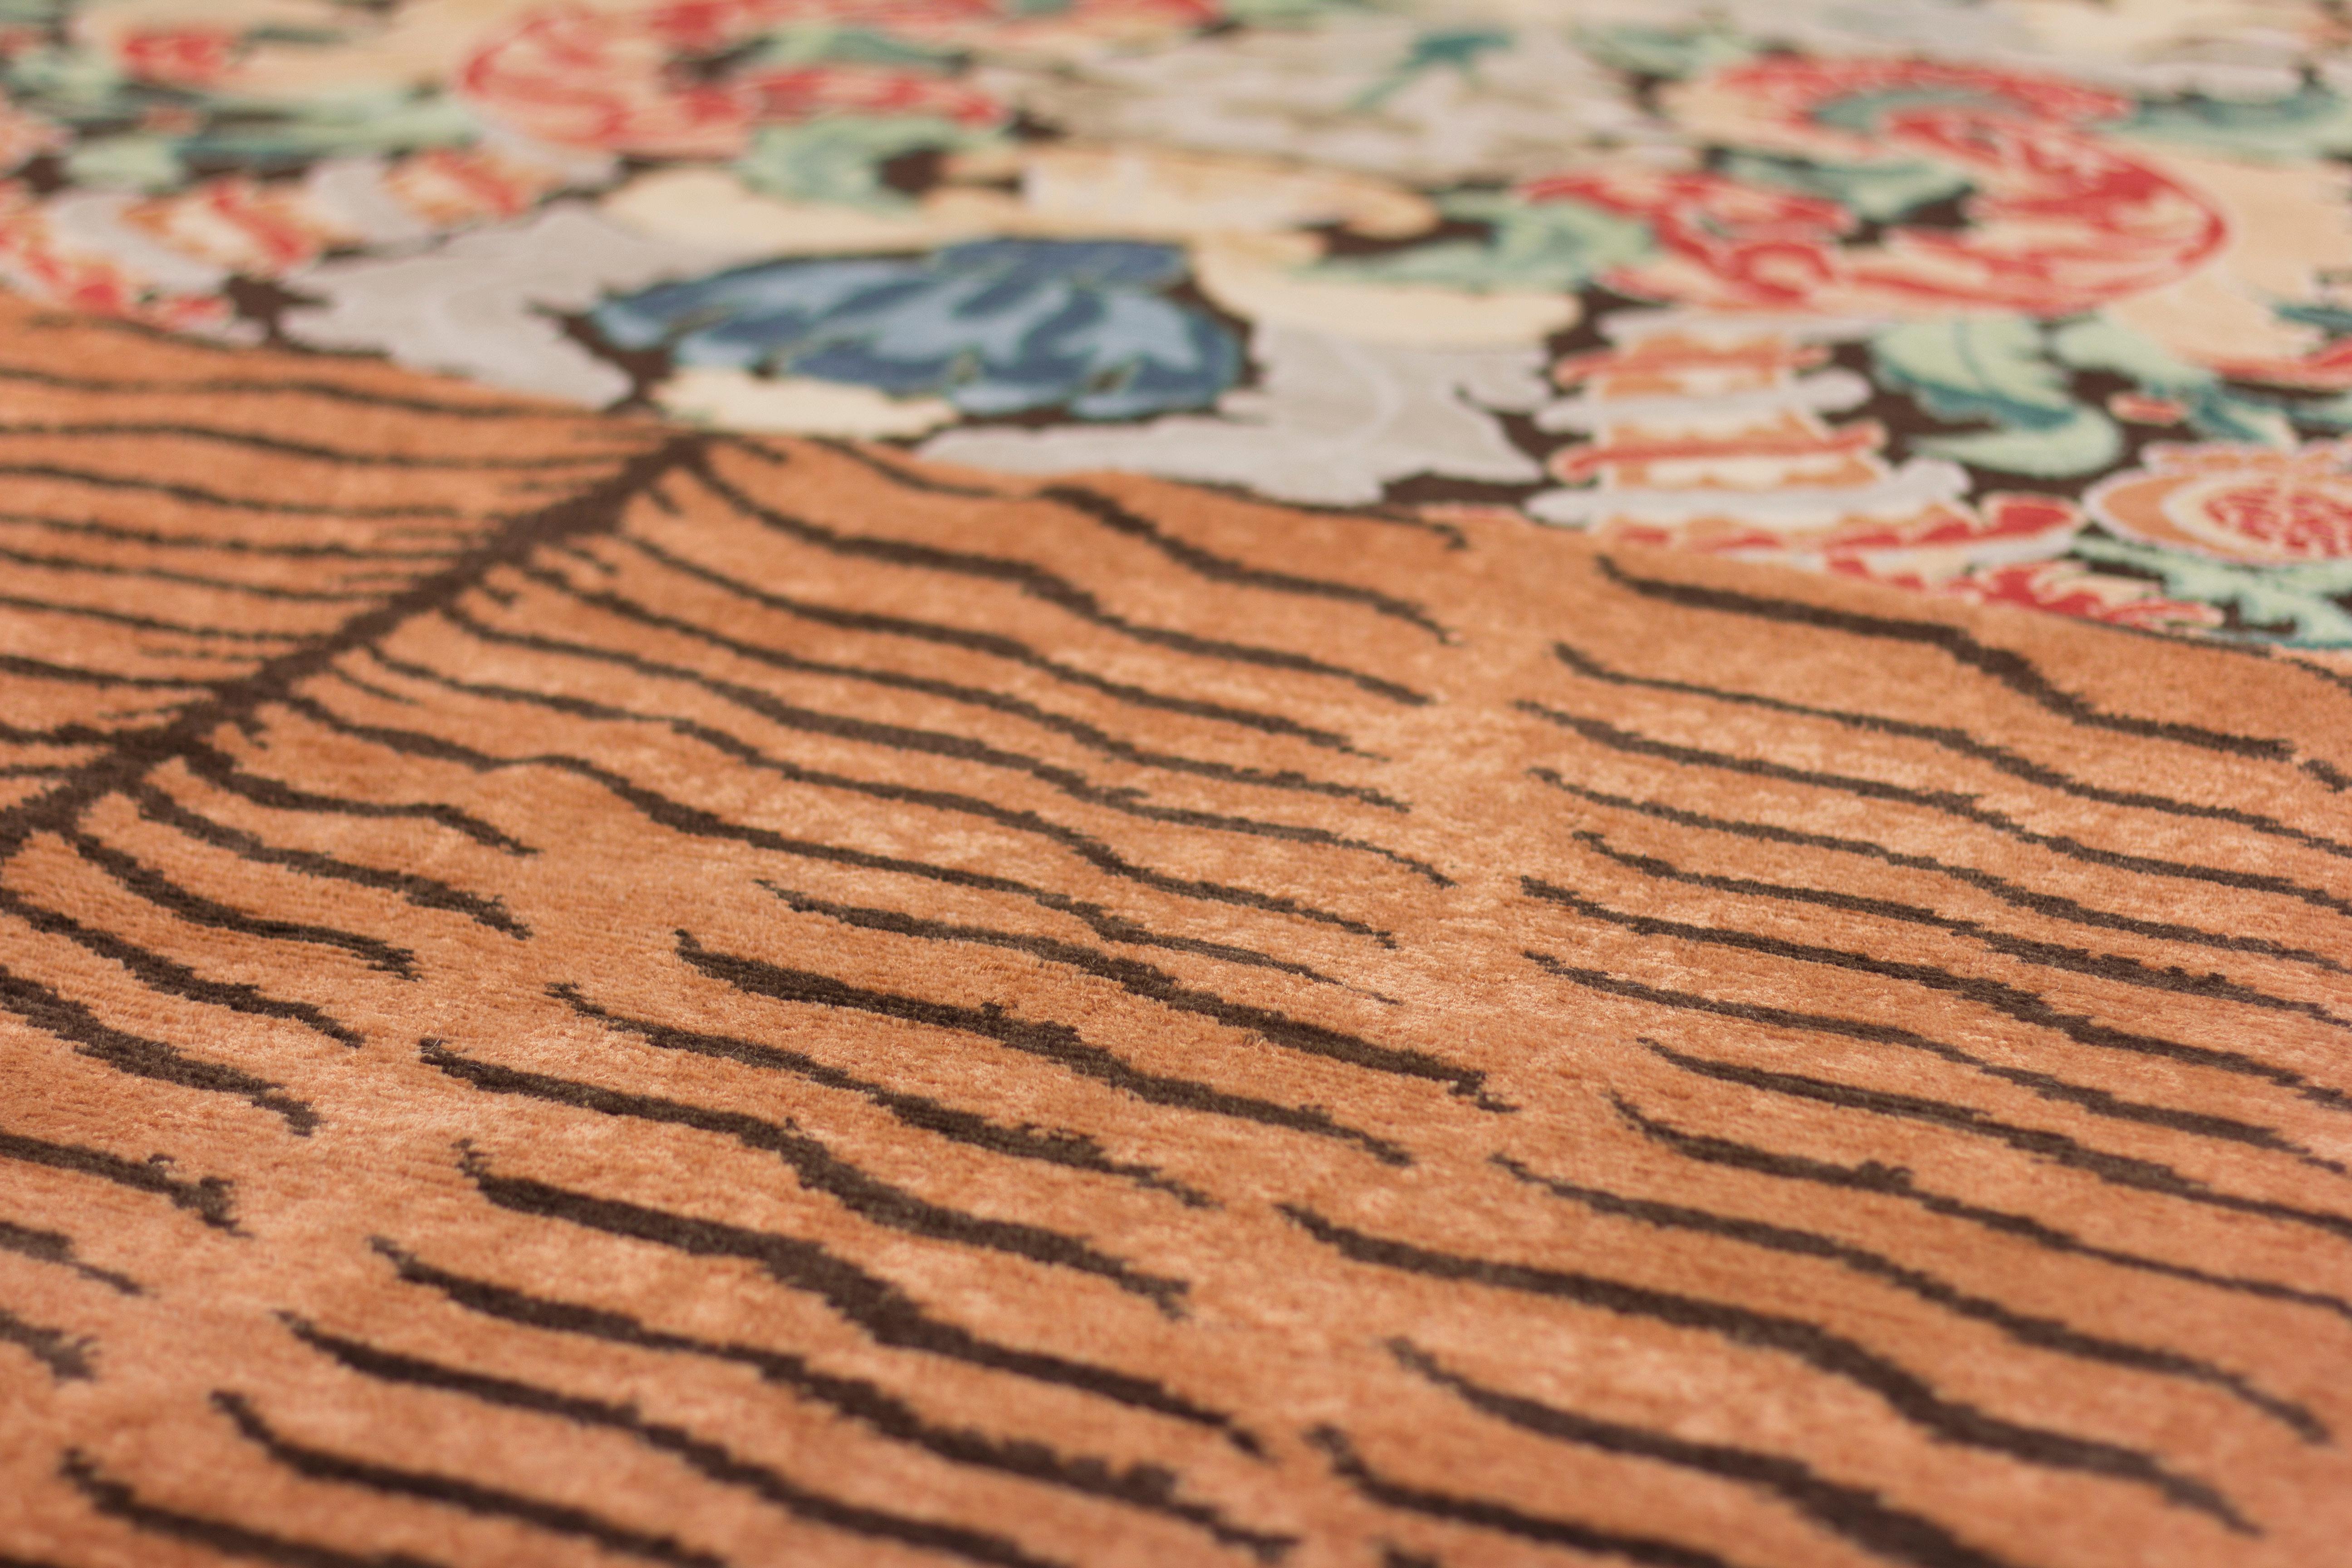 noué à la main dans l'atelier de cc-tapis à Katmandou, au Népal. Le tapis est réalisé avec un tissage en coton, de la laine de l'Himalaya et de la soie pure provenant des environs de l'atelier. 232.000 nœuds individuels par mètre carré environ. La